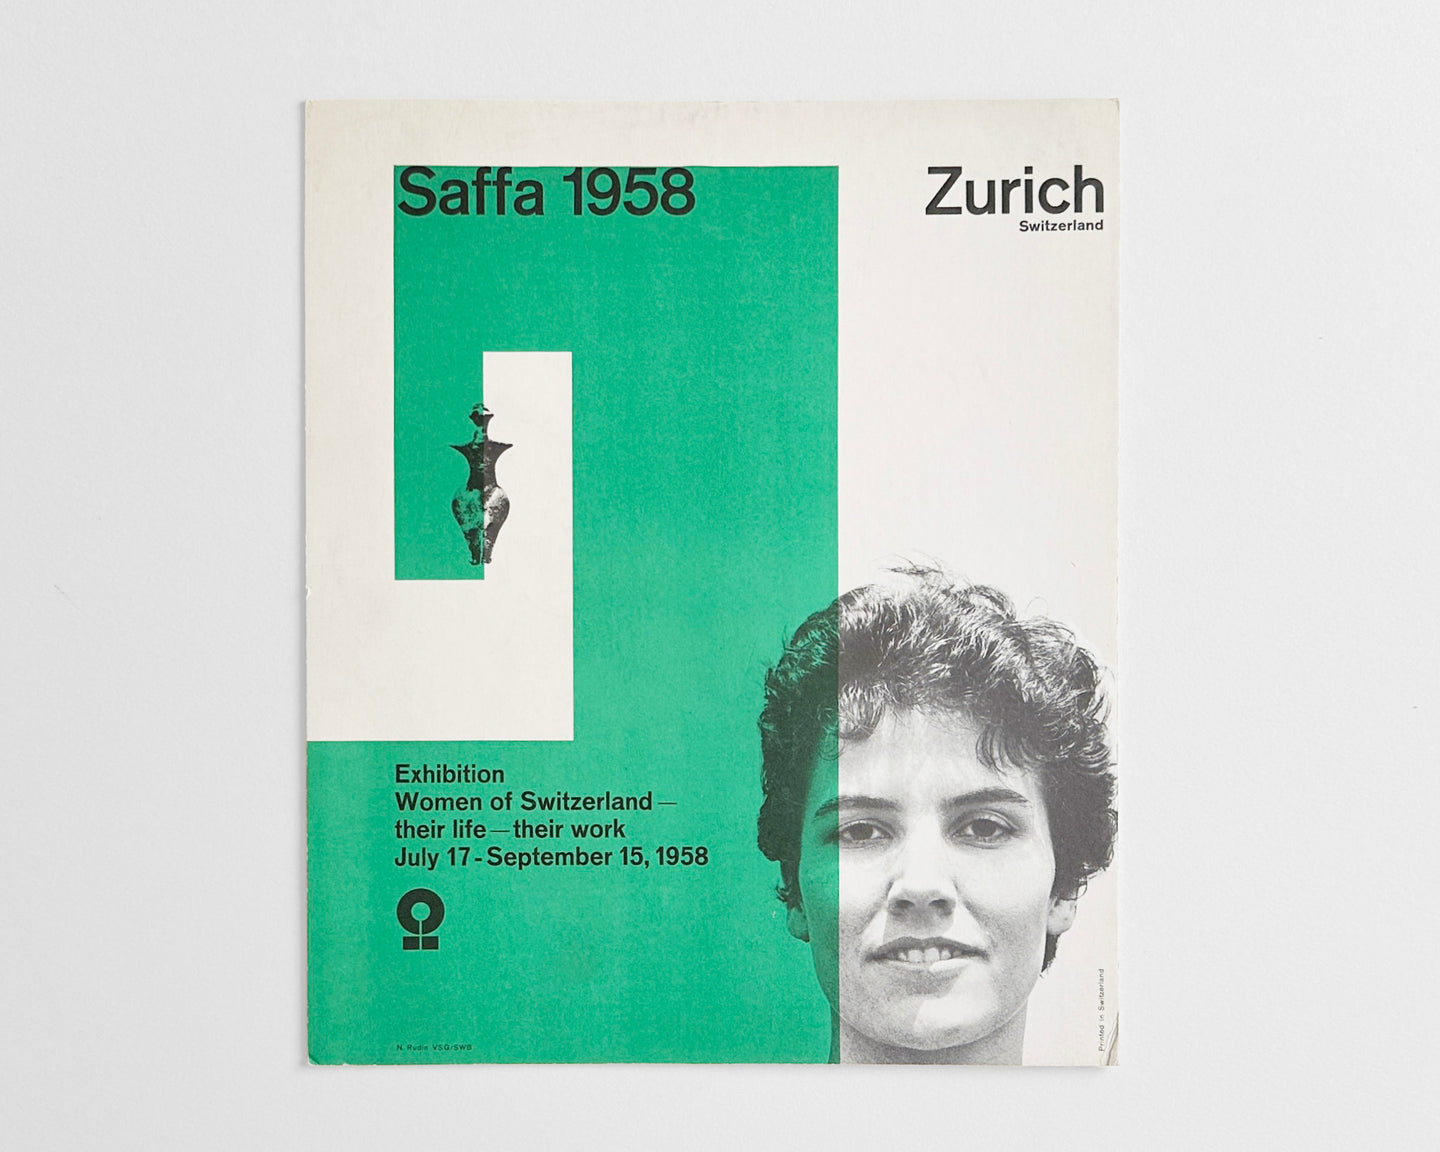 SAFFA : Swiss Exhibition of Women’s Work, Cardboard Display, 1958 [Nelly Rudin, Zurich]